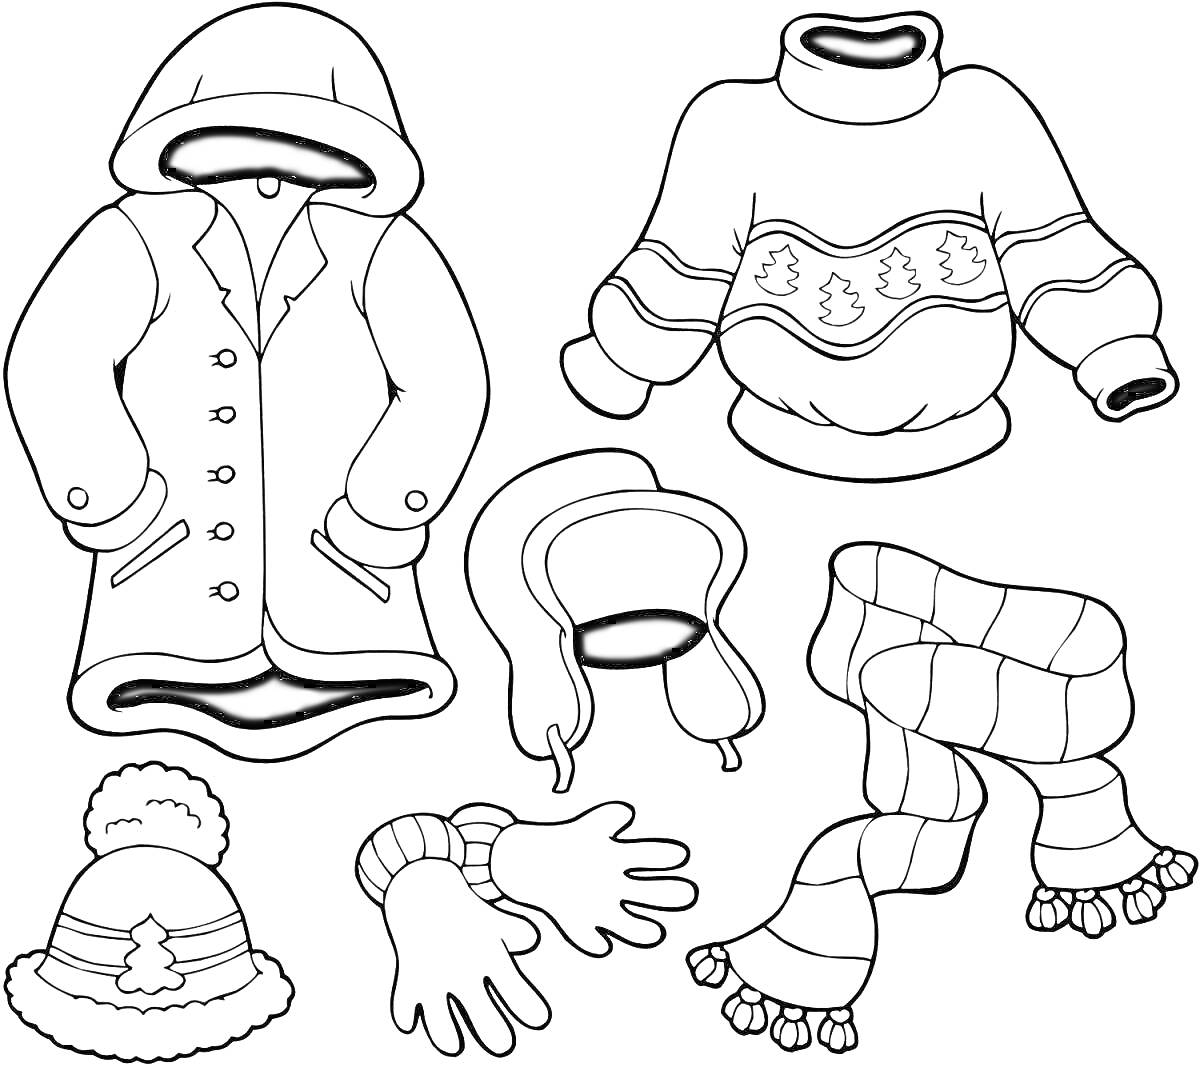 Раскраска Раскраска с зимней одеждой для детей: пальто с капюшоном, свитер с узором, ушанка, шарф с кисточками, варежки, шапка с помпоном